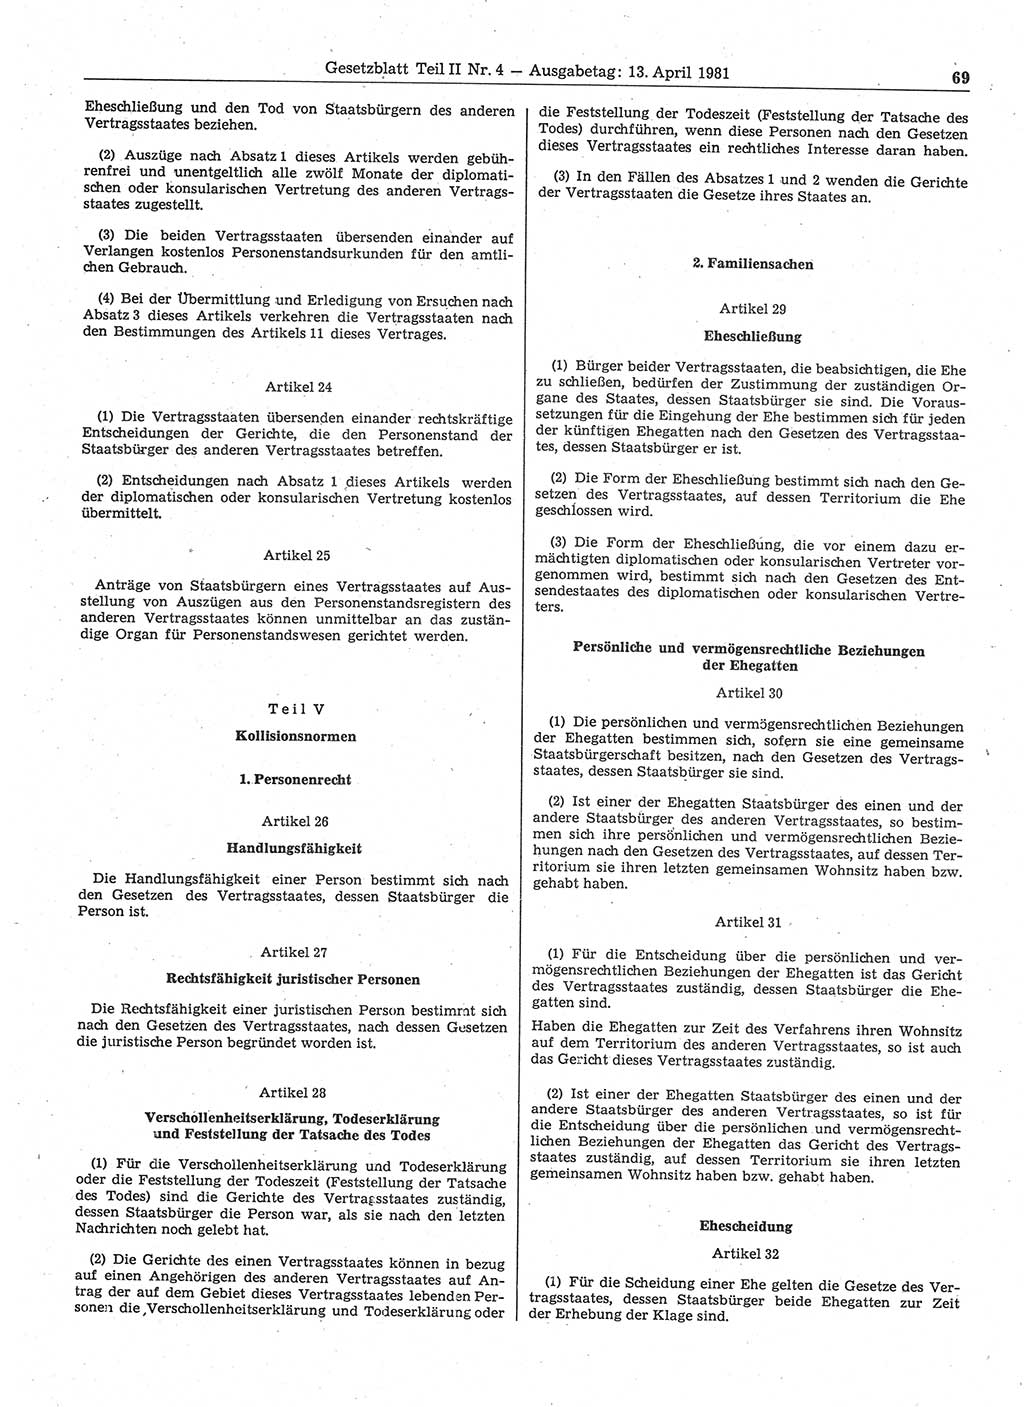 Gesetzblatt (GBl.) der Deutschen Demokratischen Republik (DDR) Teil ⅠⅠ 1981, Seite 69 (GBl. DDR ⅠⅠ 1981, S. 69)